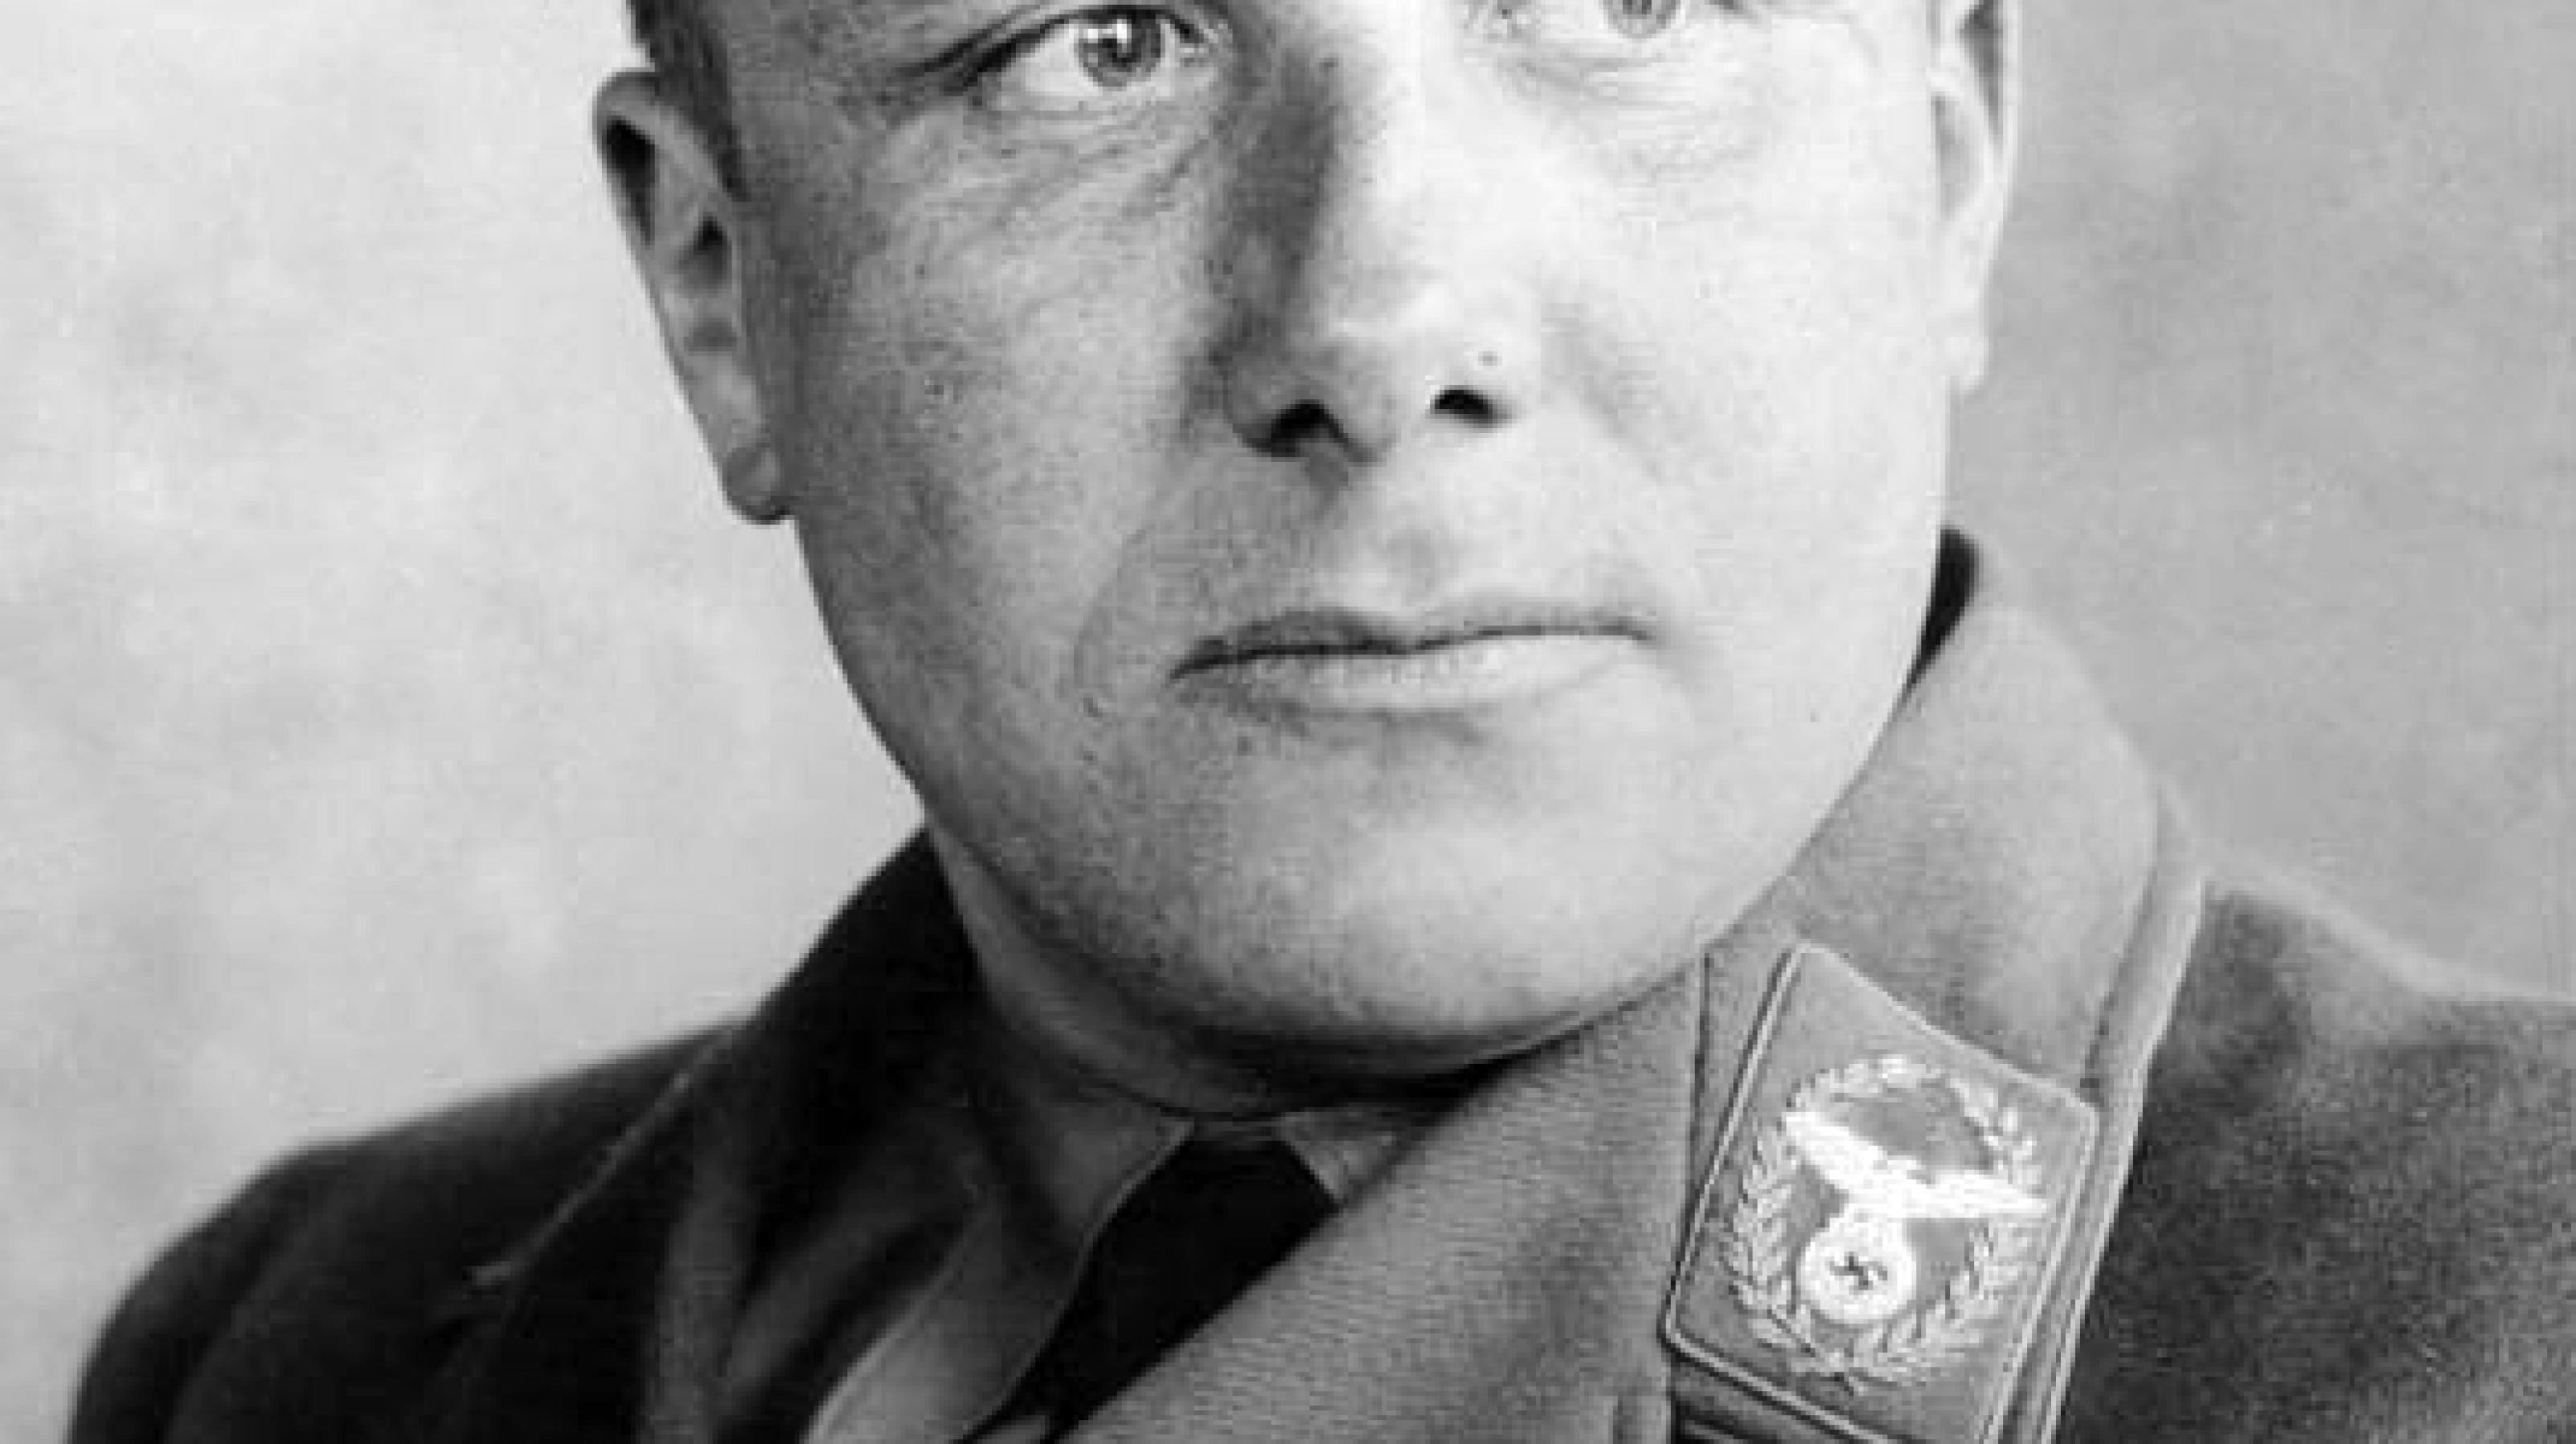 Das Schwarzweiß-Bild zeigt den Nationalsozialisten Martin Bormann im Porträt.